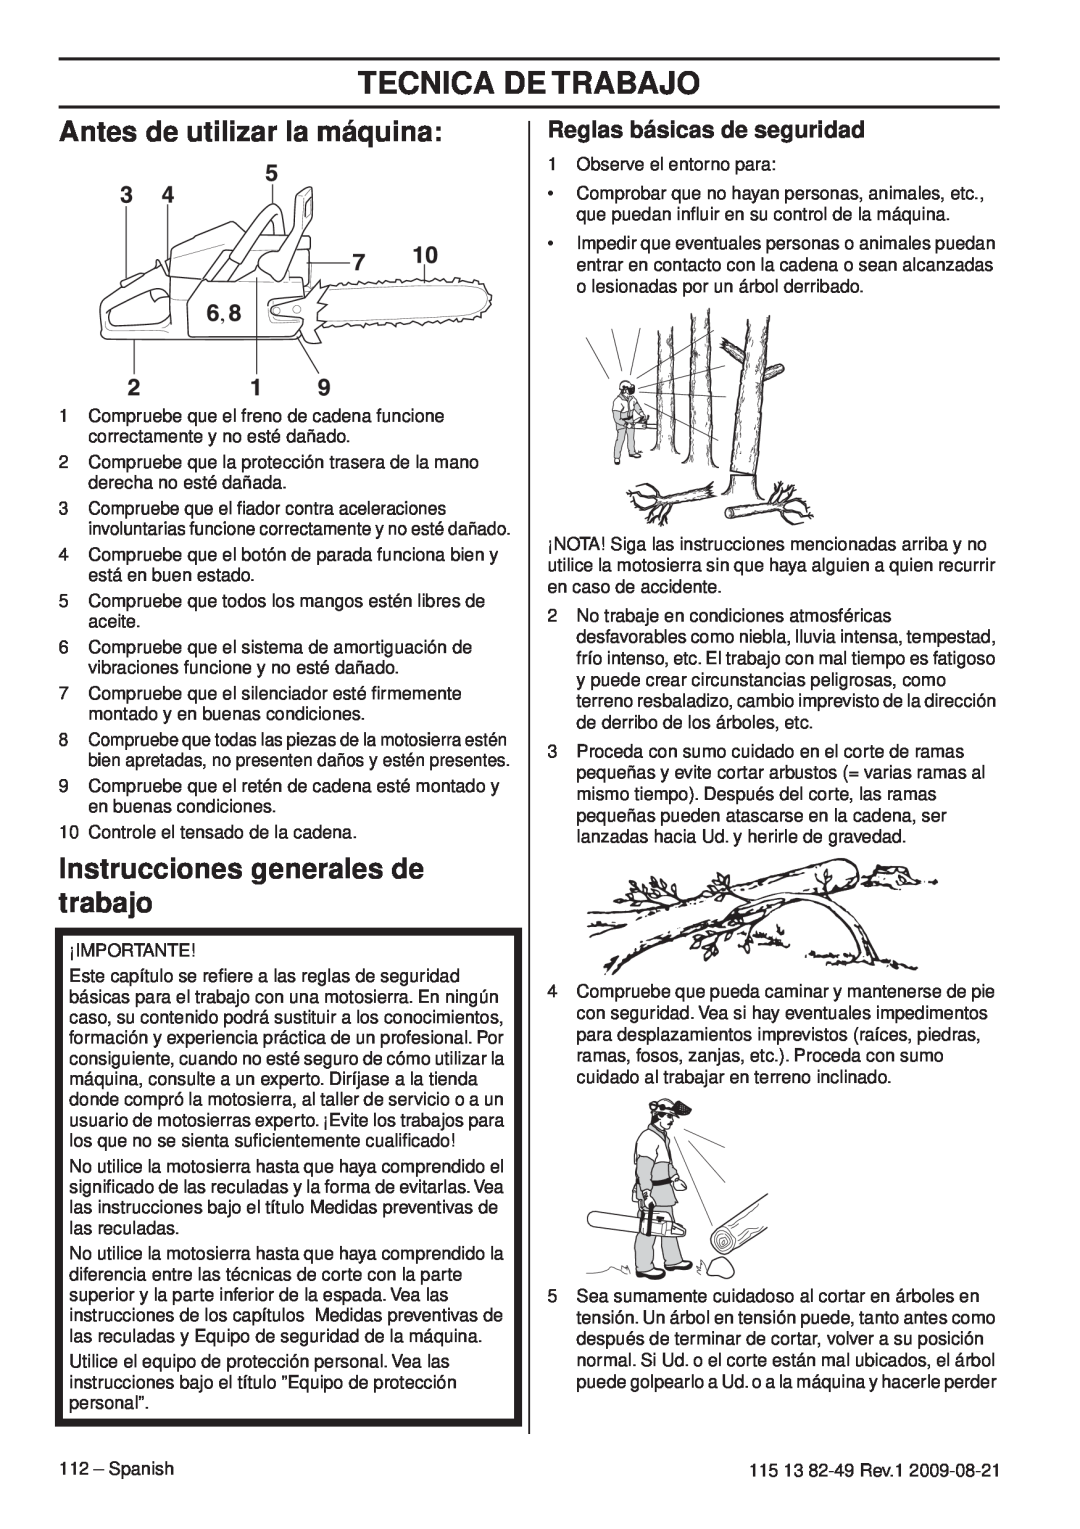 Husqvarna 115 13 82-49 Tecnica De Trabajo, Antes de utilizar la máquina, Instrucciones generales de trabajo 